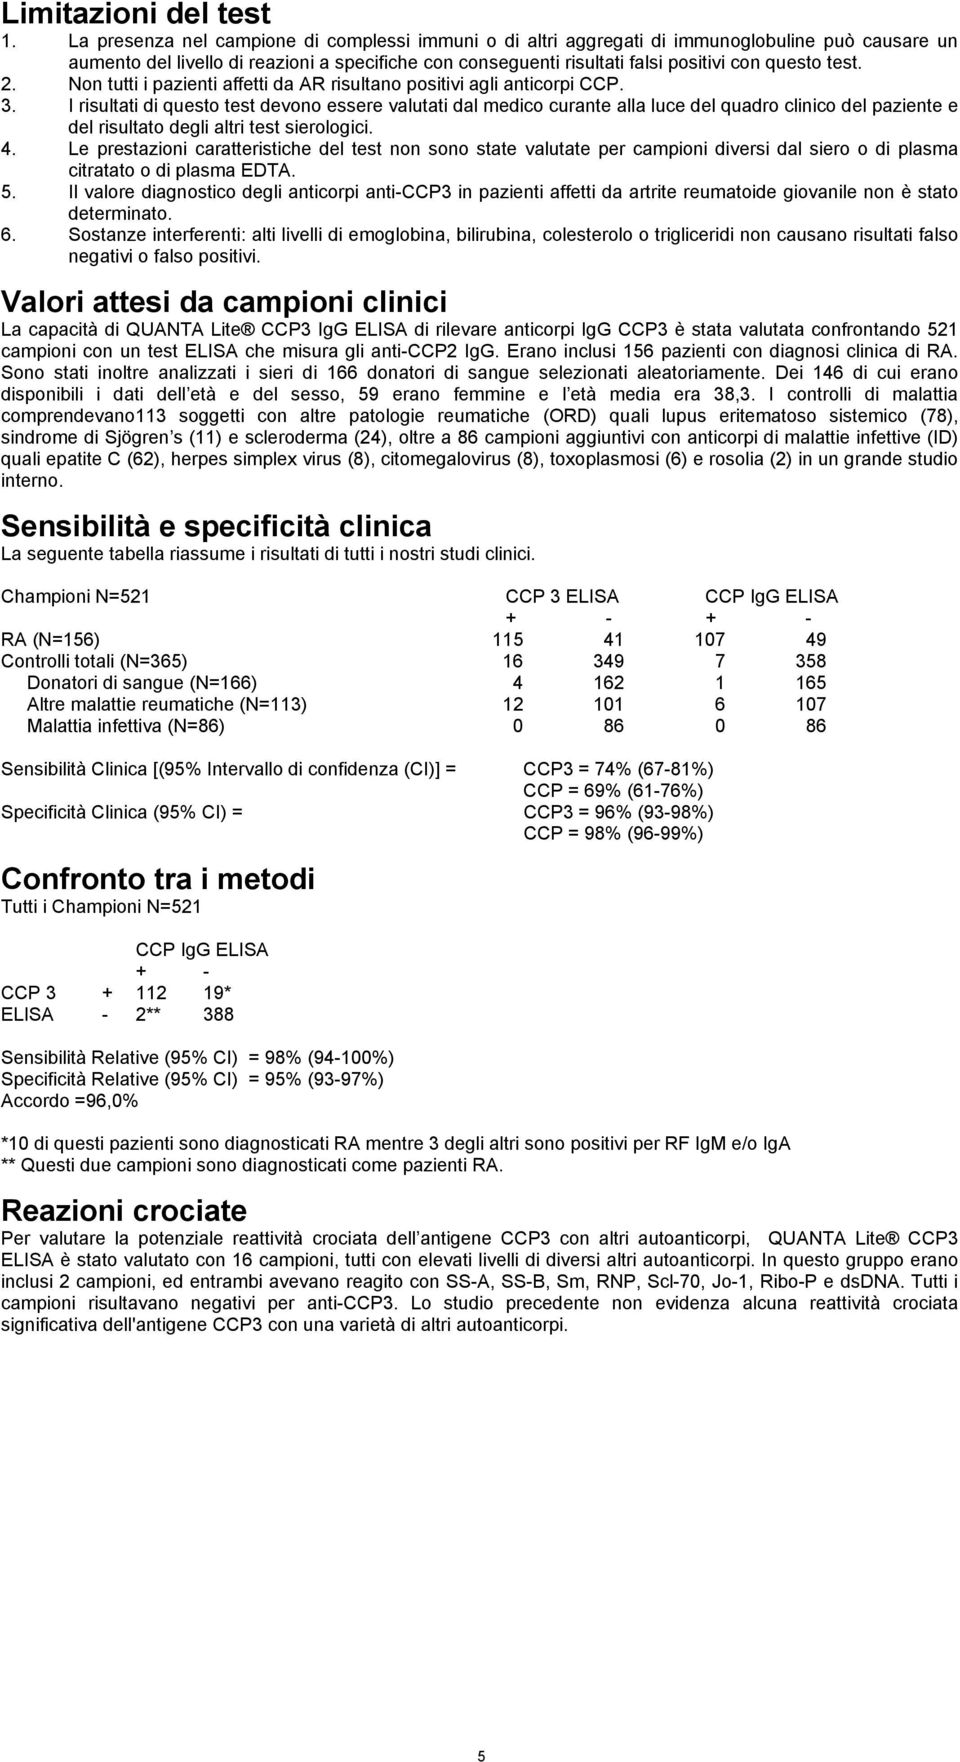 test. 2. Non tutti i pazienti affetti da AR risultano positivi agli anticorpi CCP. 3.